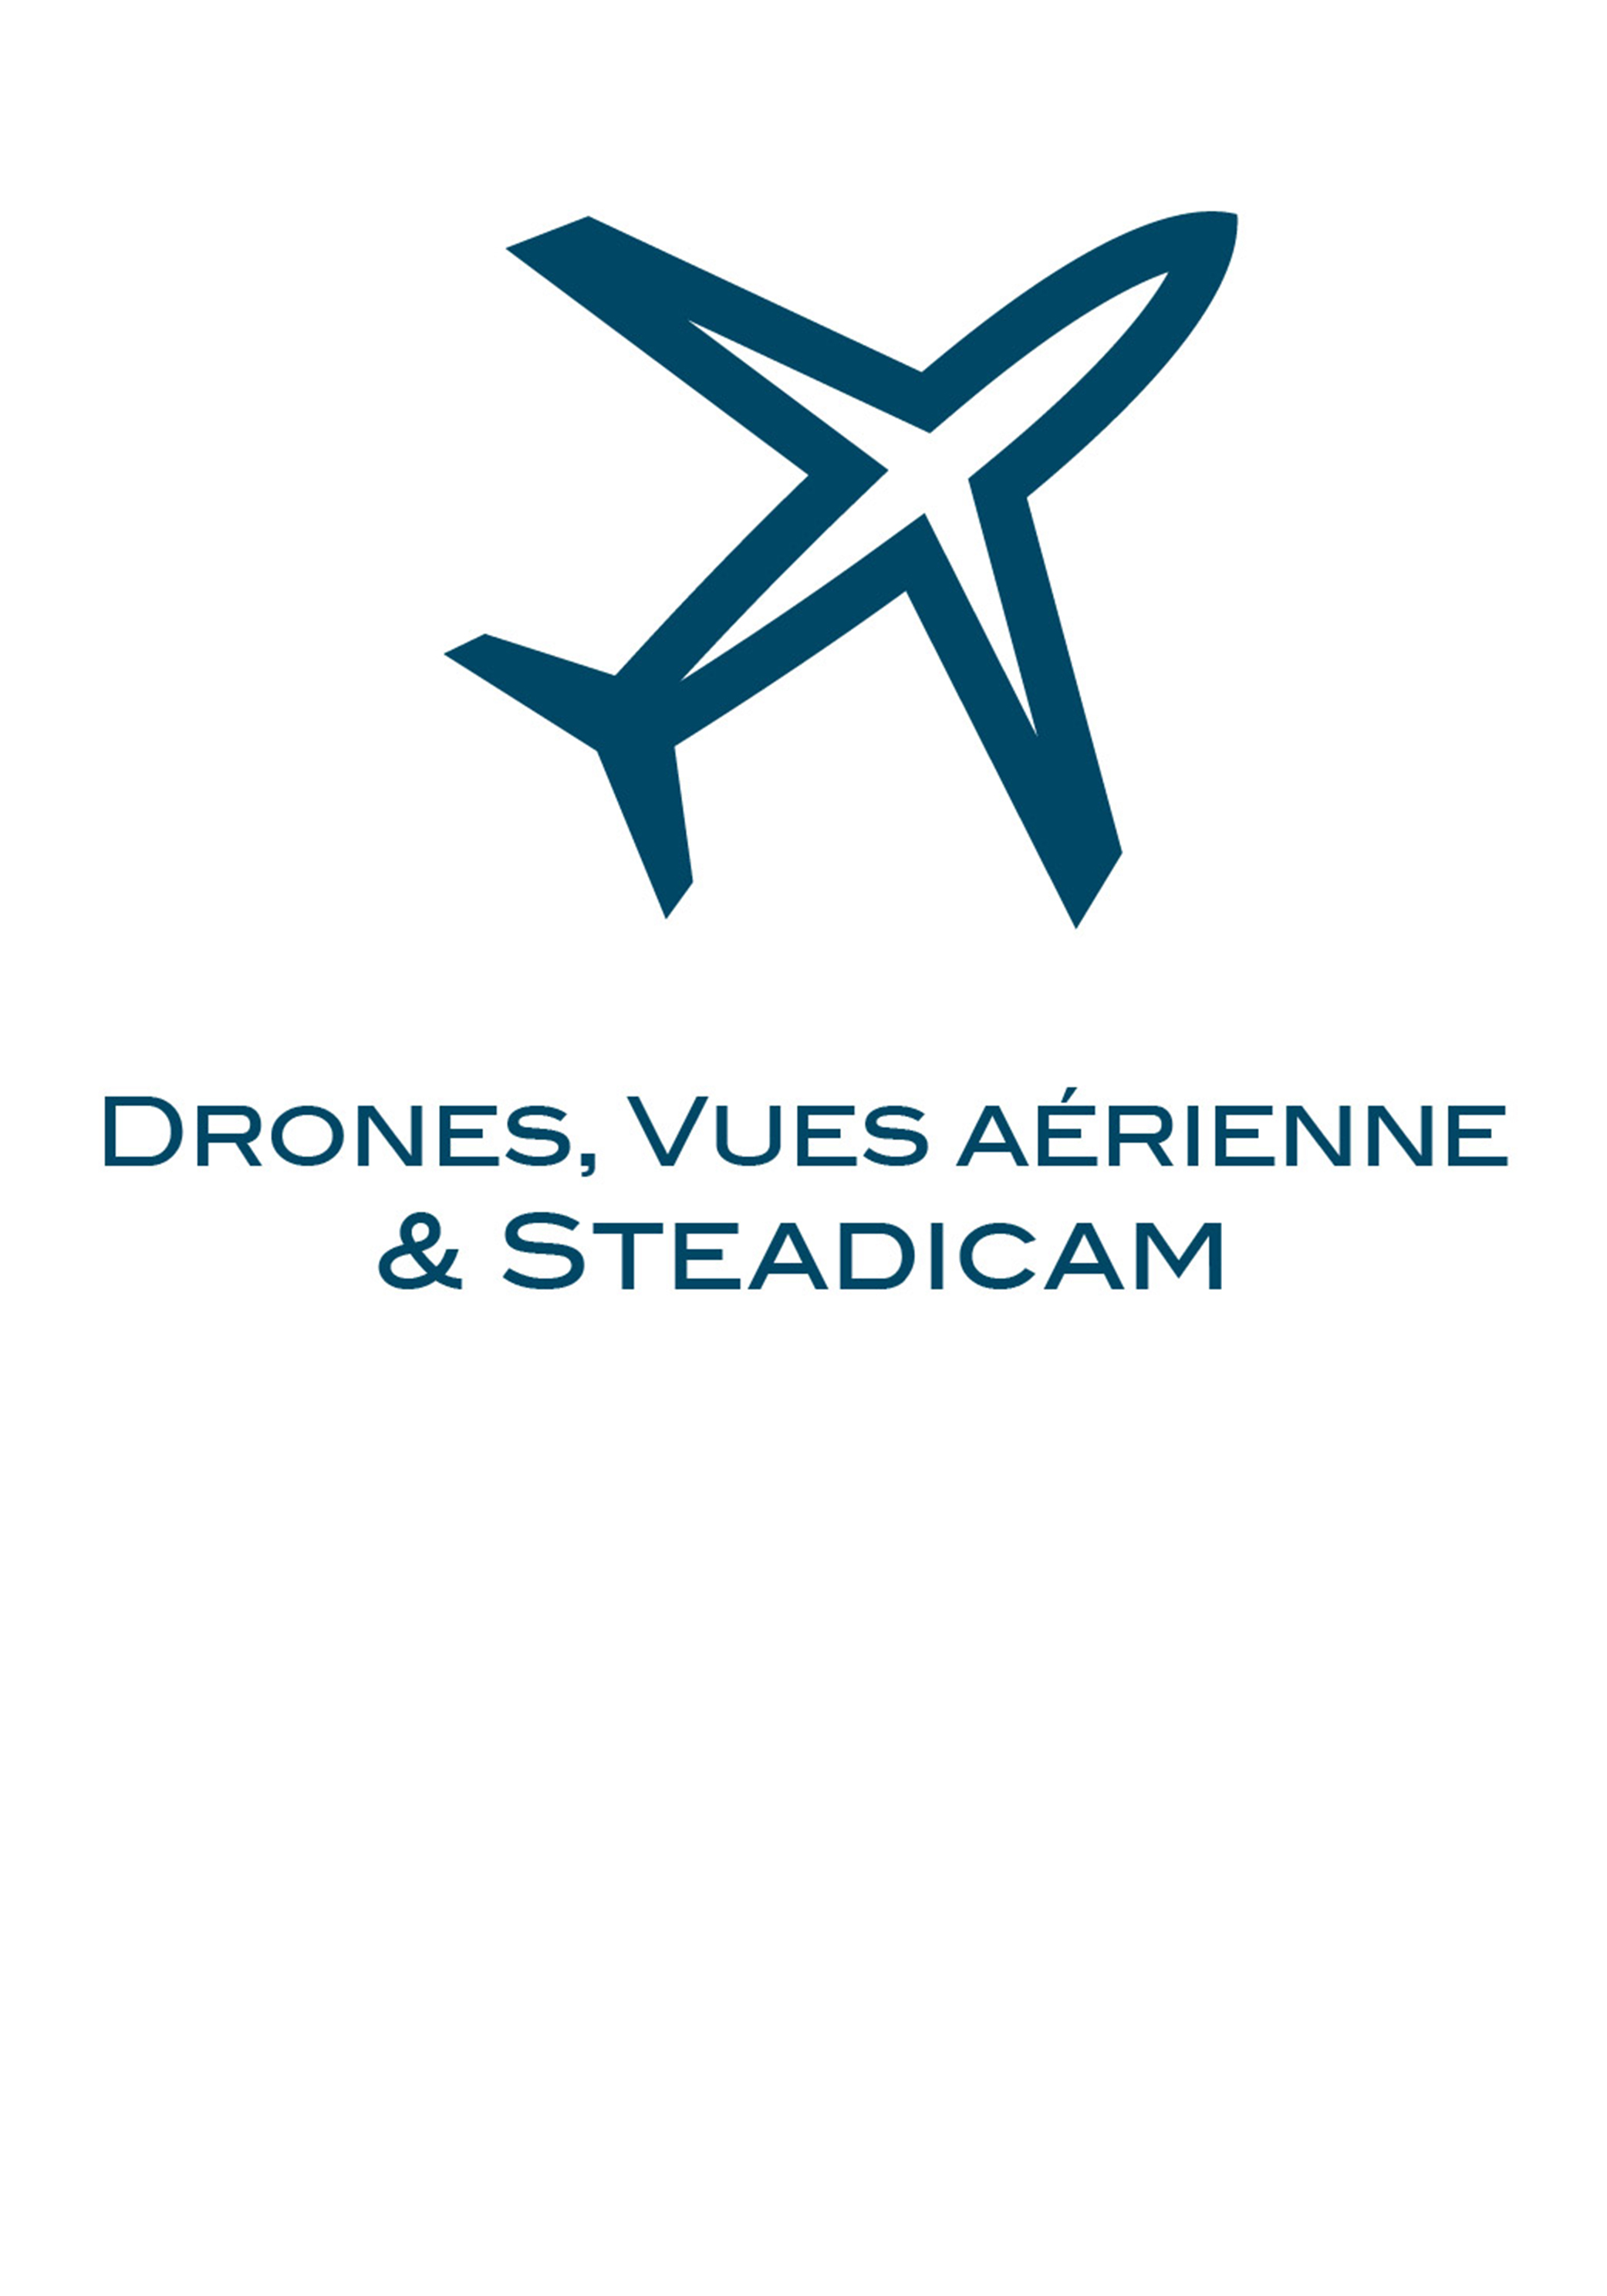 Nous travaillons régulièrement avec des techniciens spécialistes: opérateurs de Steadicam, spécialistes de vues aérienne et pilotage de drones, caméra sous-marine et des technologie de motion control.